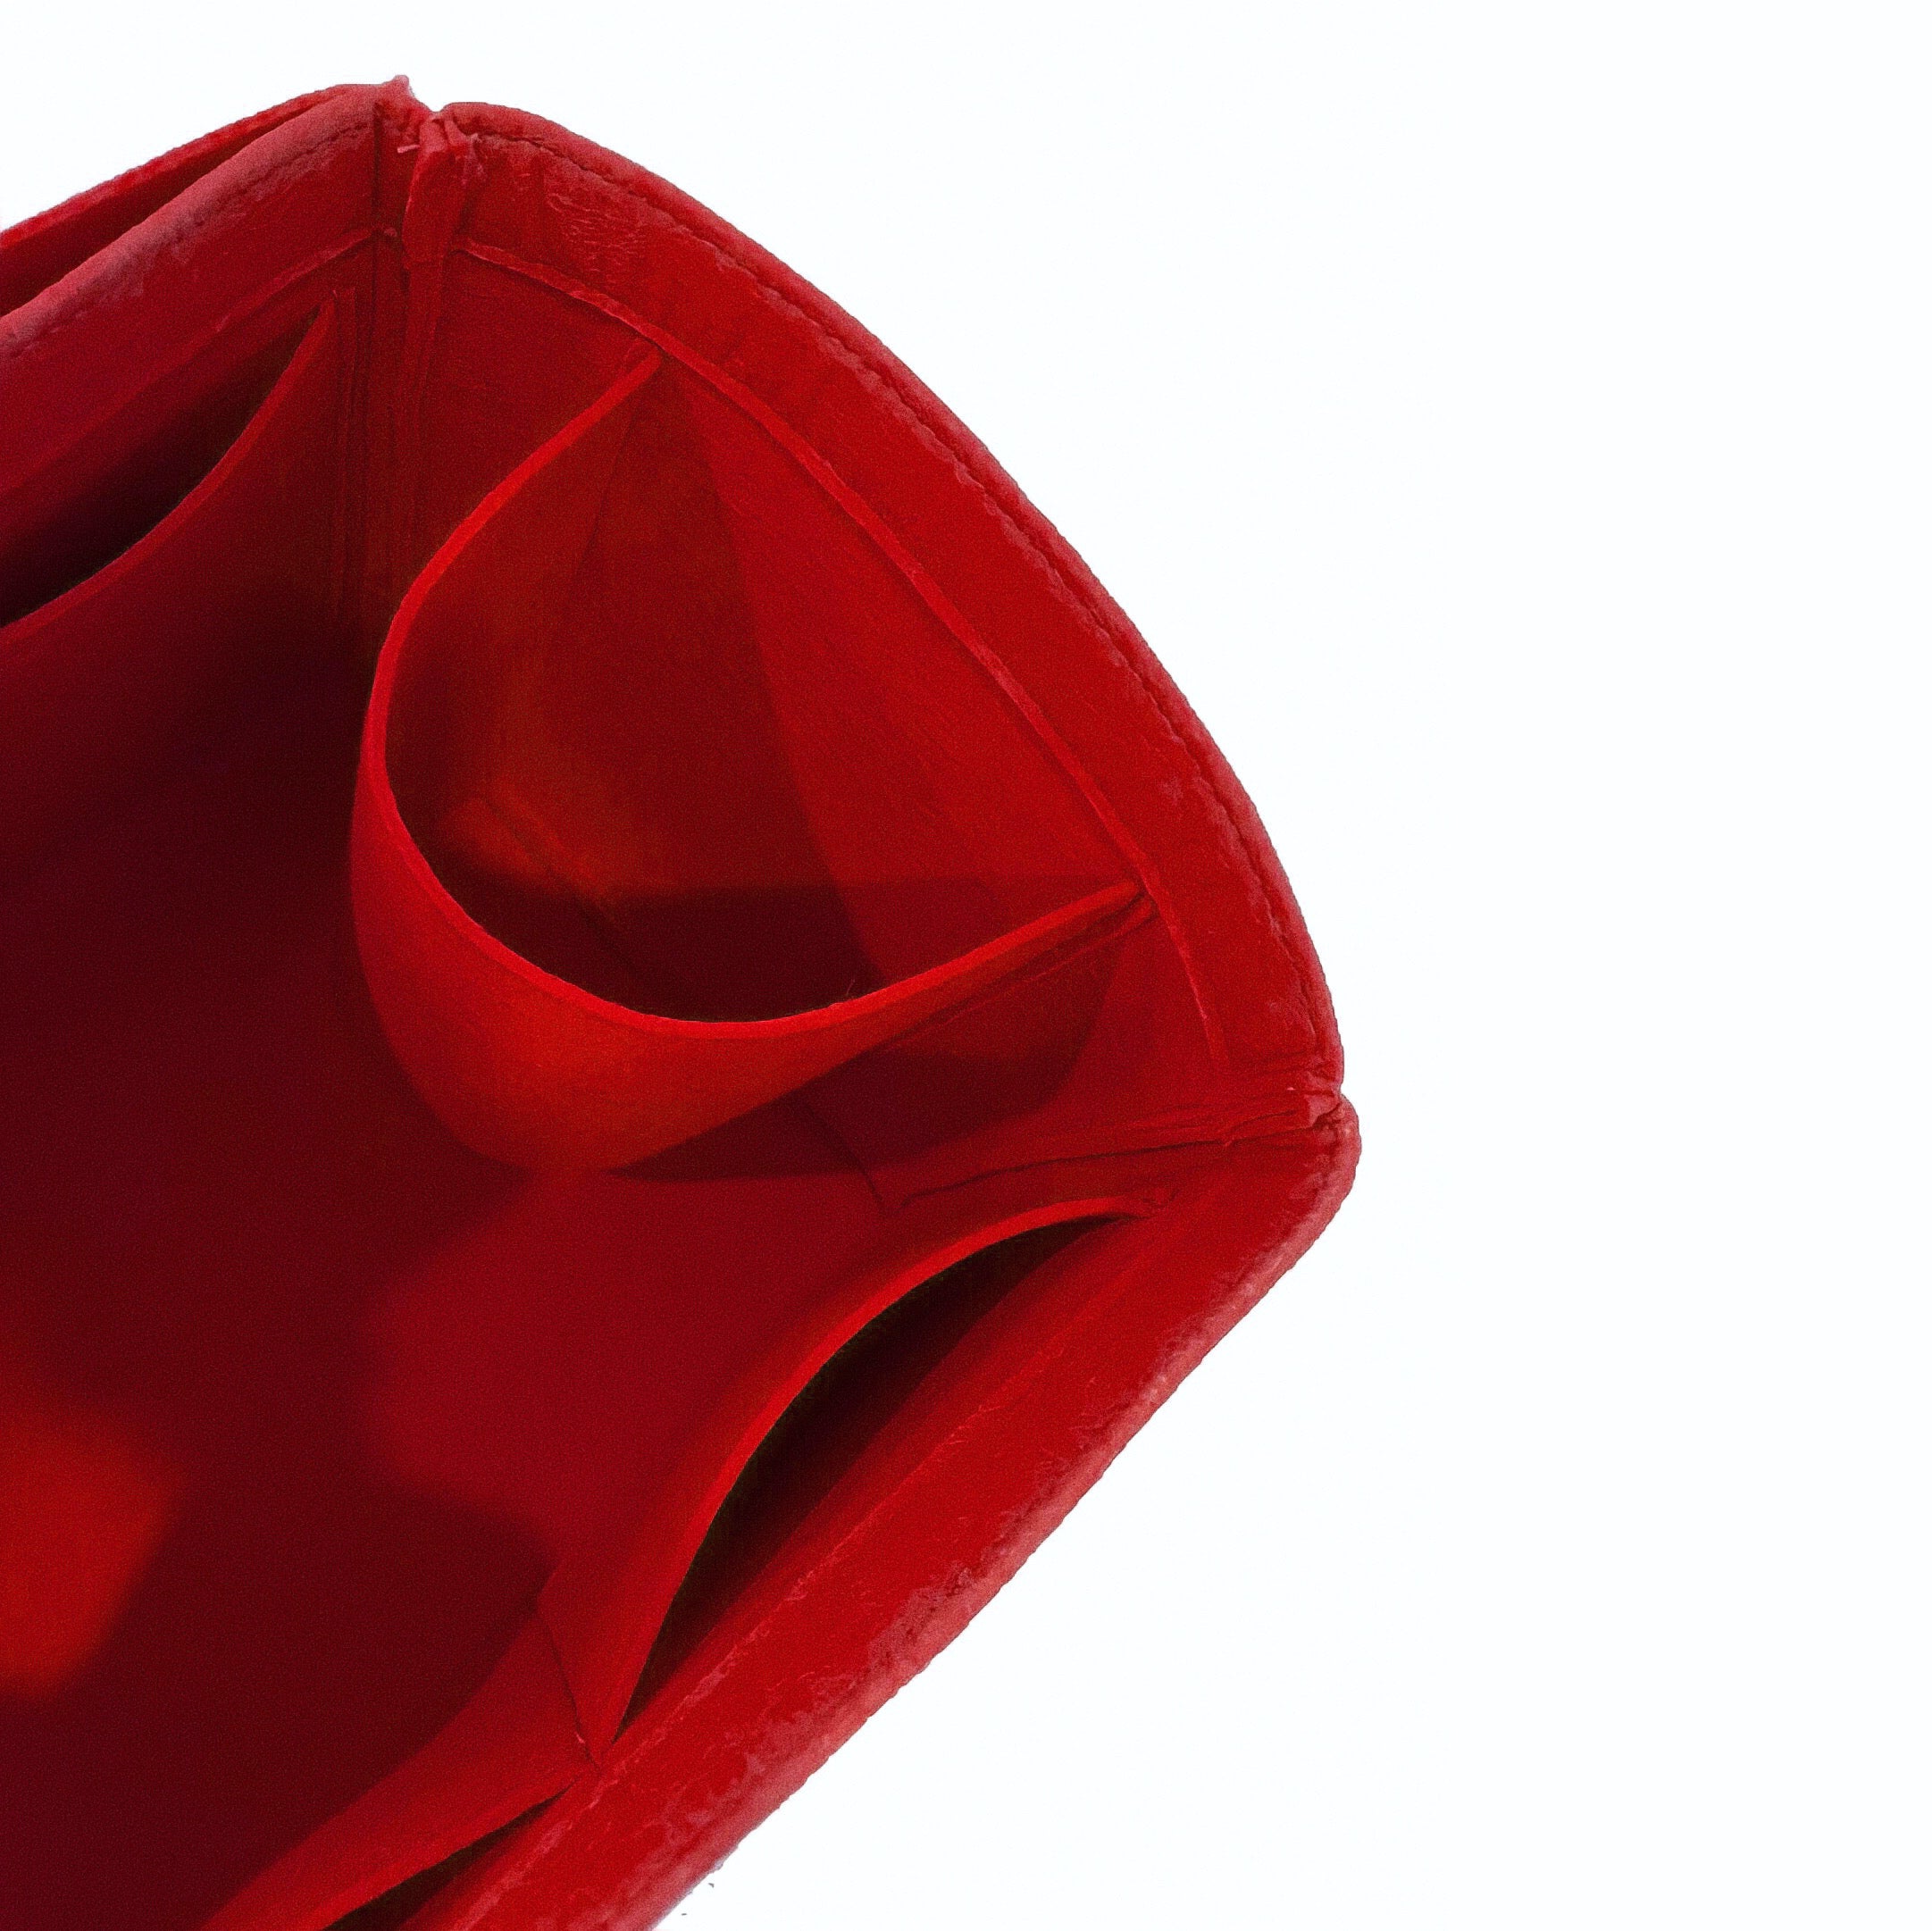 BaginBag | Handbag Organizer For Valentino for Rockstud | Designer Purse Insert  | Bag Liner | Bag Insert Organizer | Tote bag organizer  | Bag Organizer | Luxury bag |  Bag protector | Organizer inserts for handbags